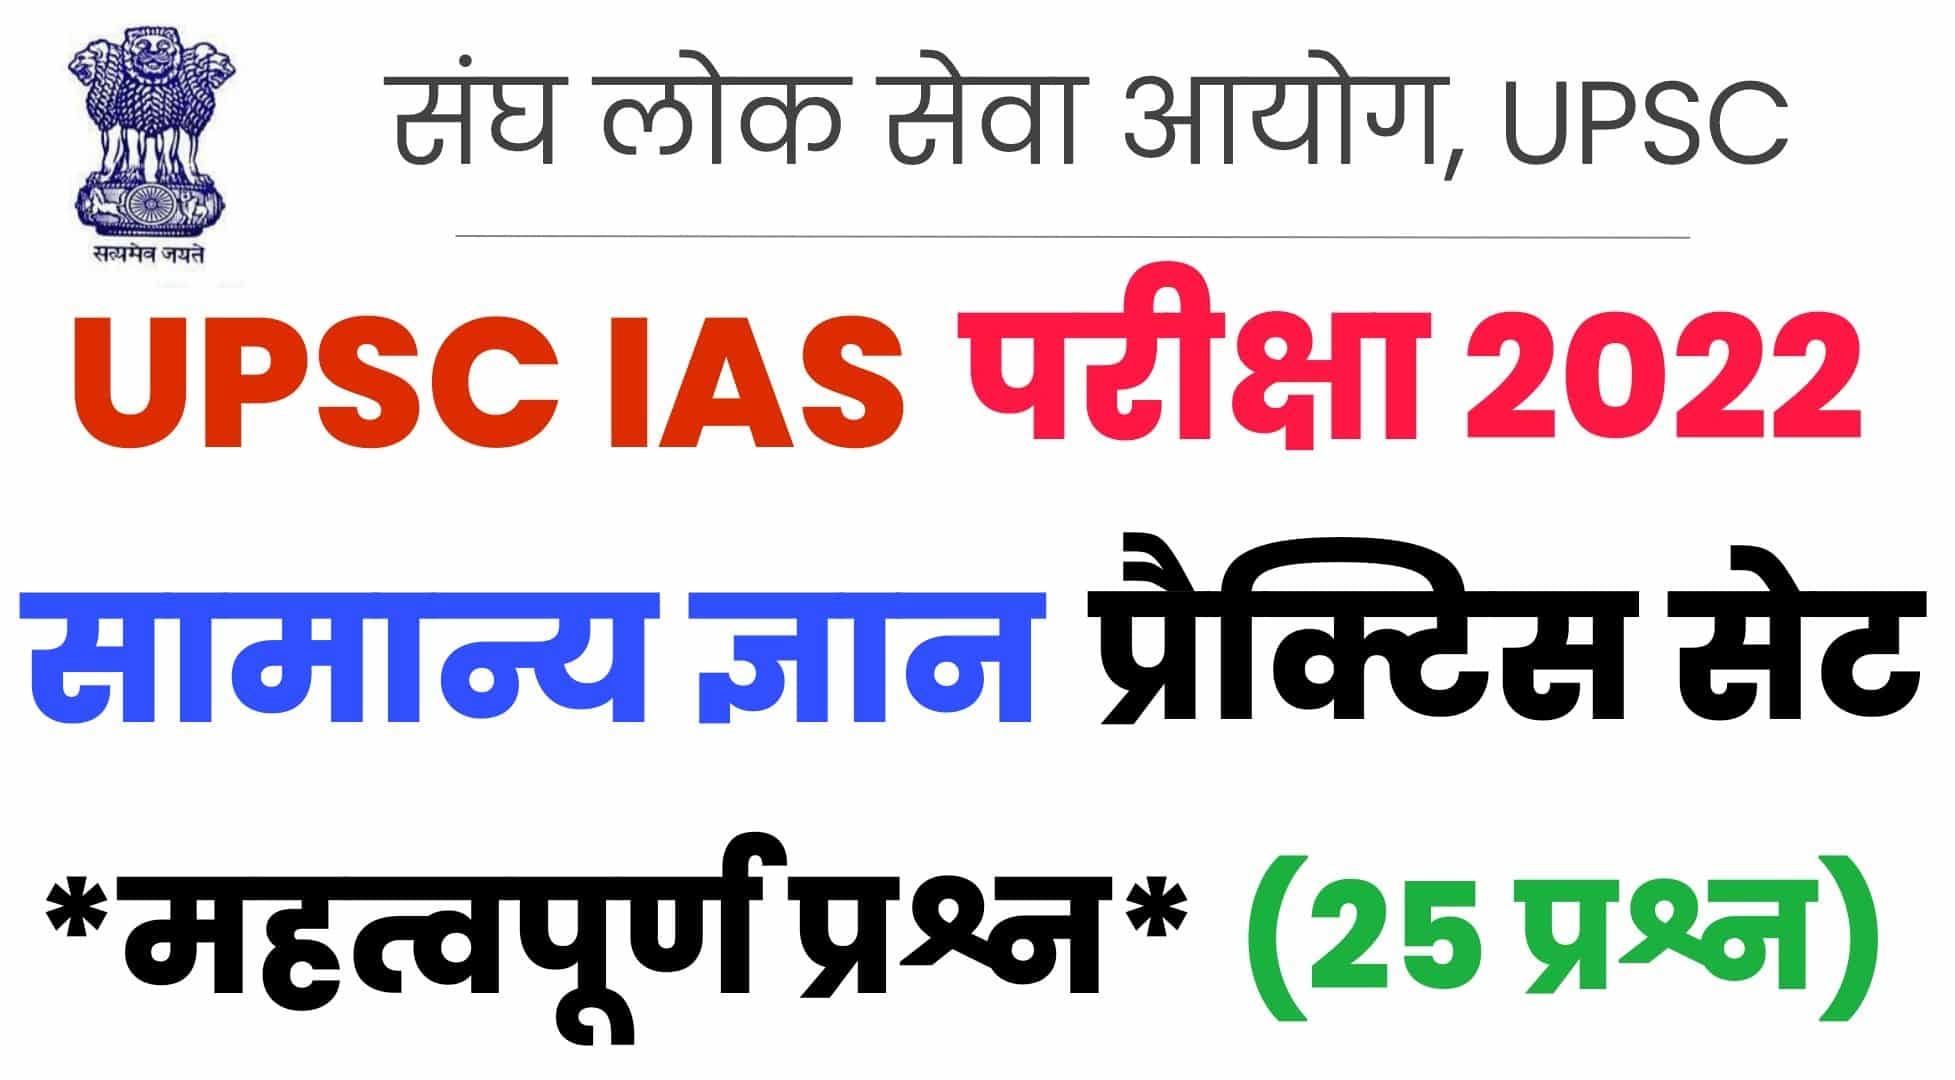 UPSC IAS General Knowledge Practice Set : IAS की परीक्षा में कई बार पूछे गए हैं सामान्य ज्ञान के ये महत्वपूर्ण प्रश्न